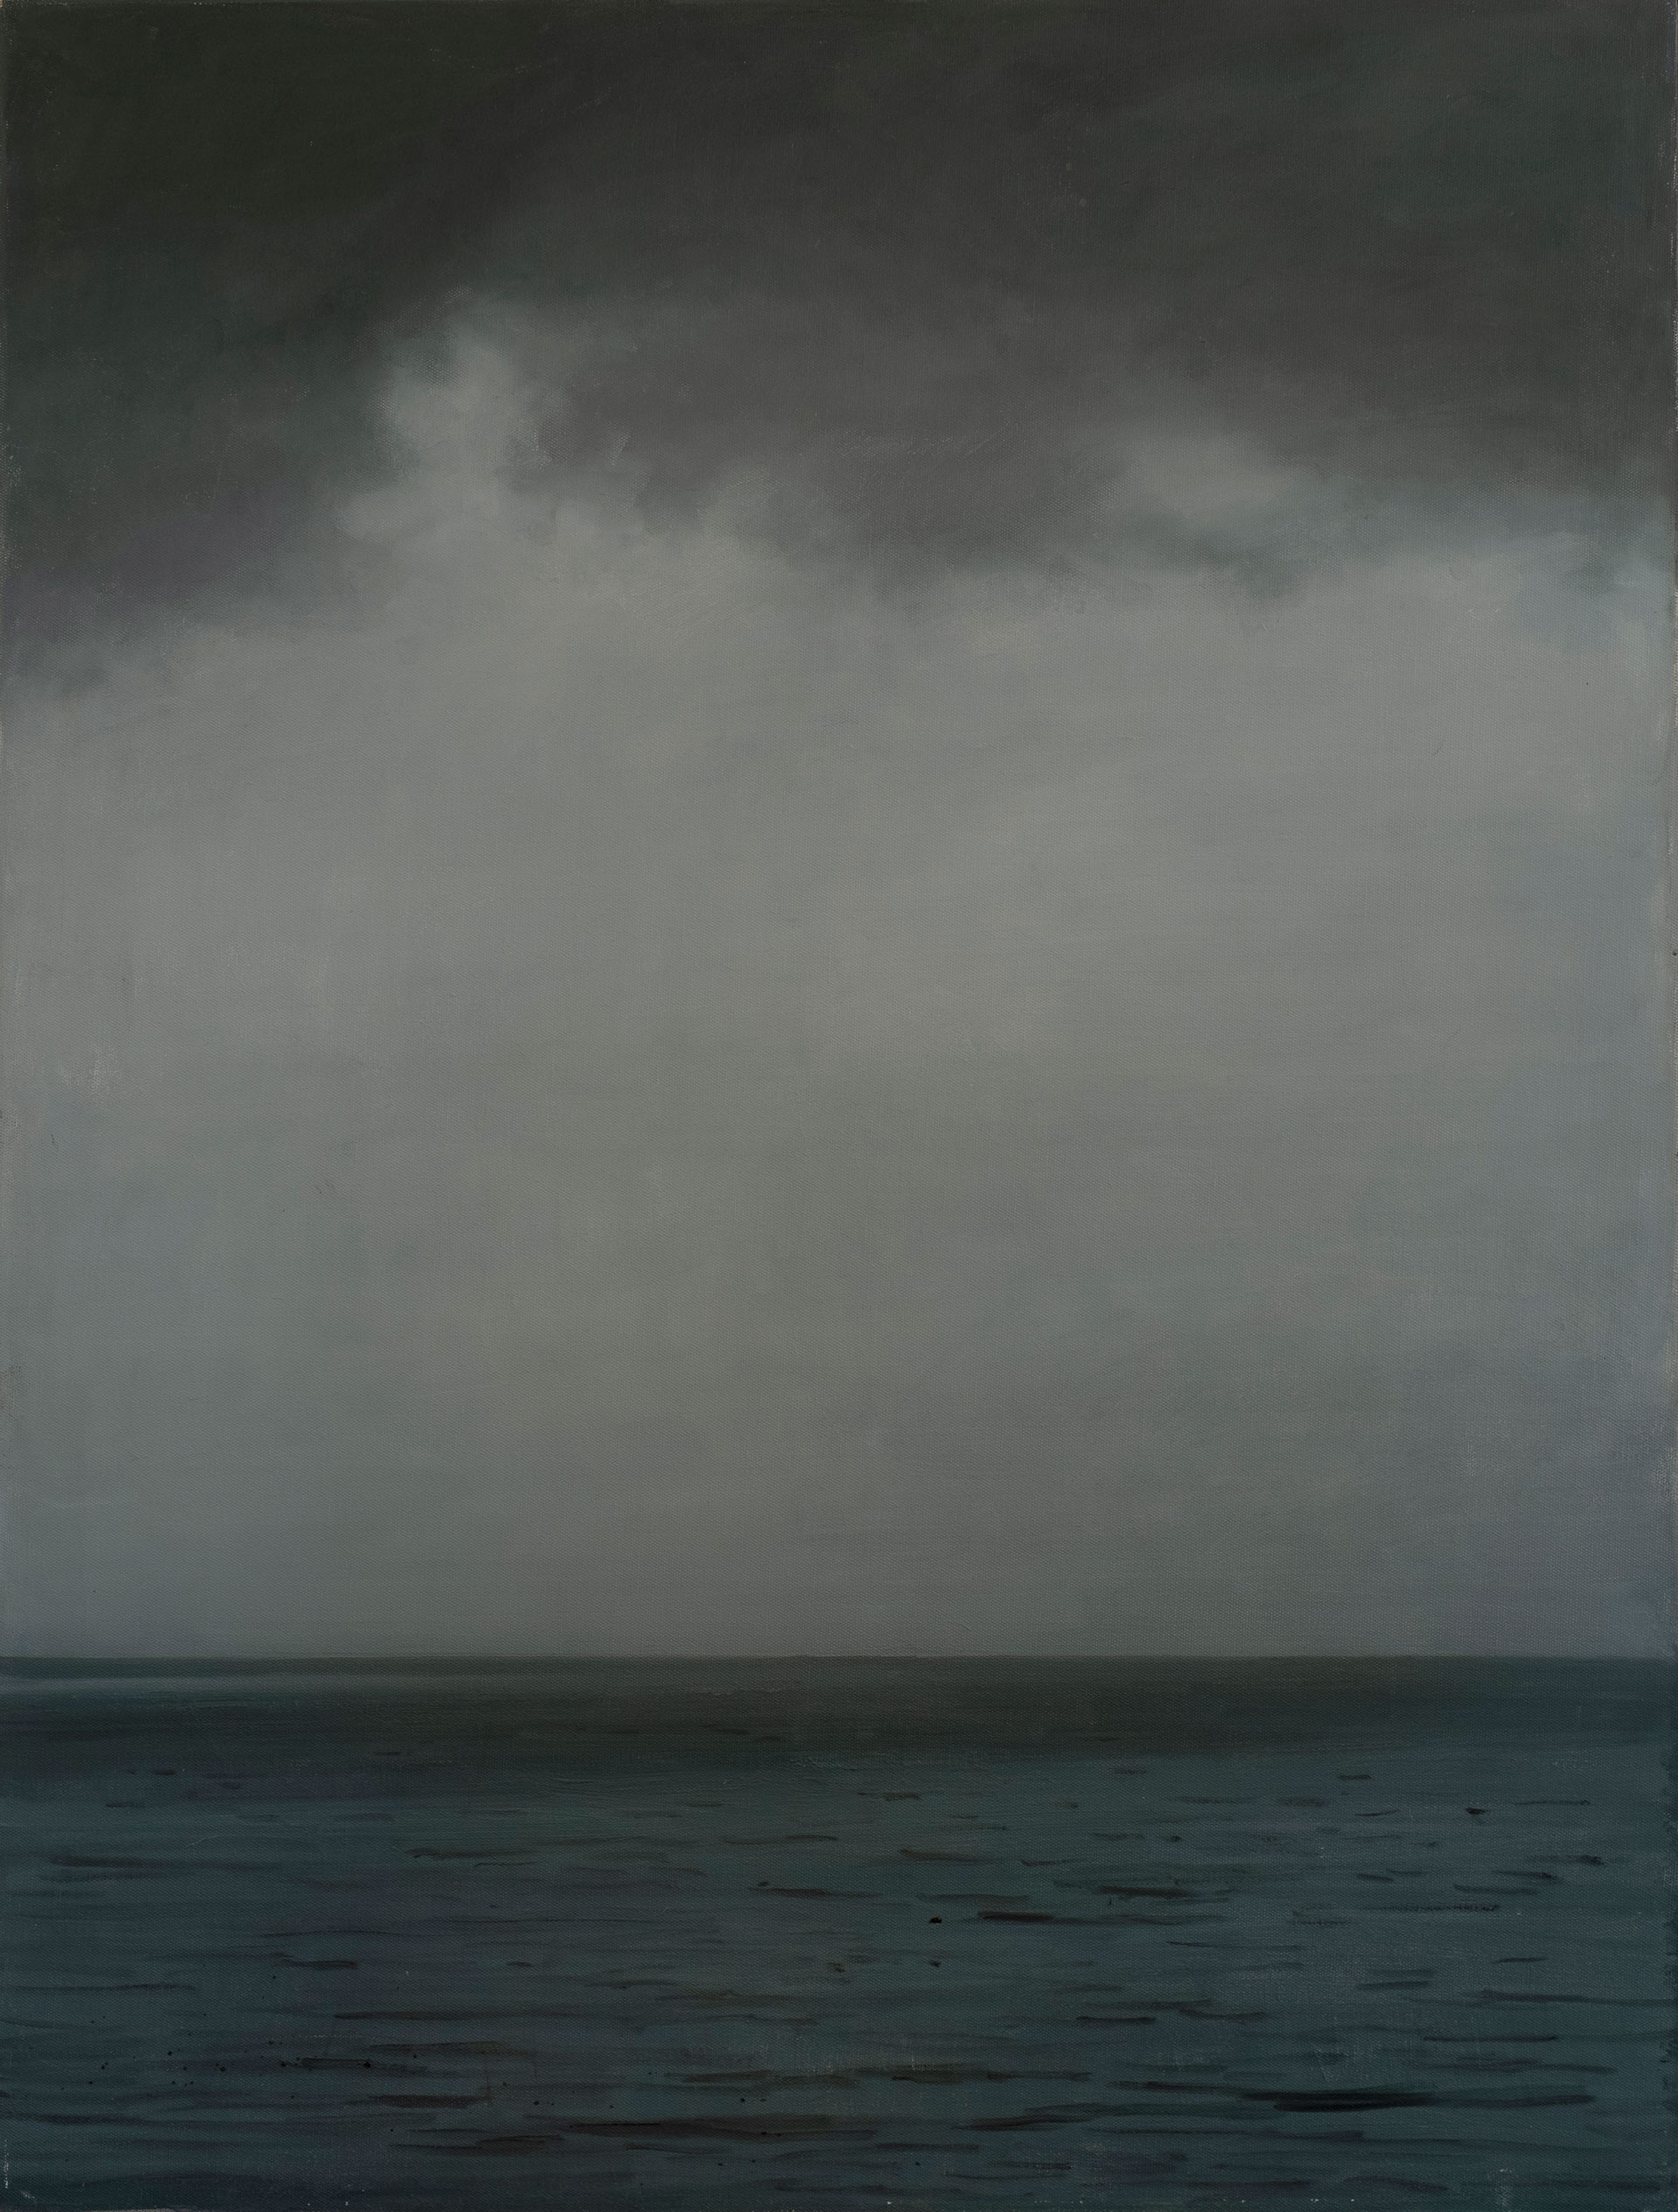 Rain Is Coming - 1, Maksim Kaetkin, Buy the painting Oil